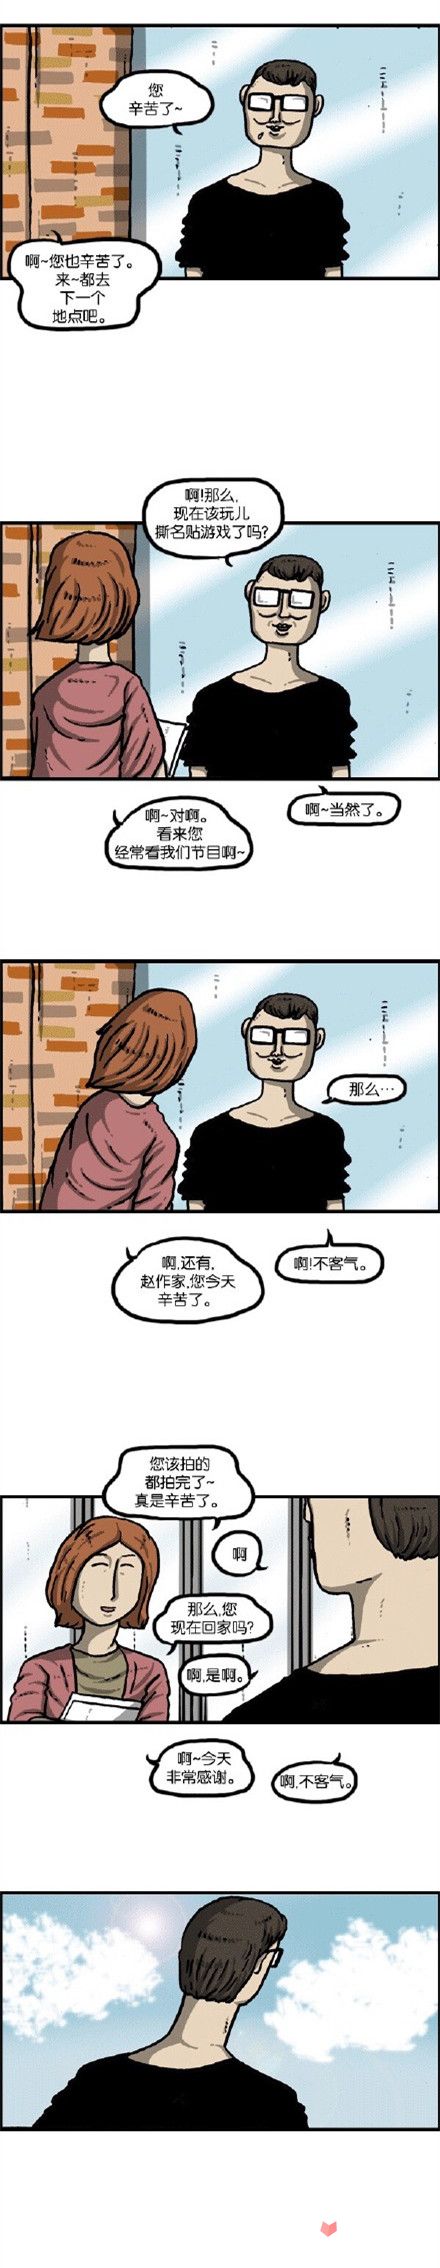 韩国同名漫画改编 《心灵的声音》登陆安卓2